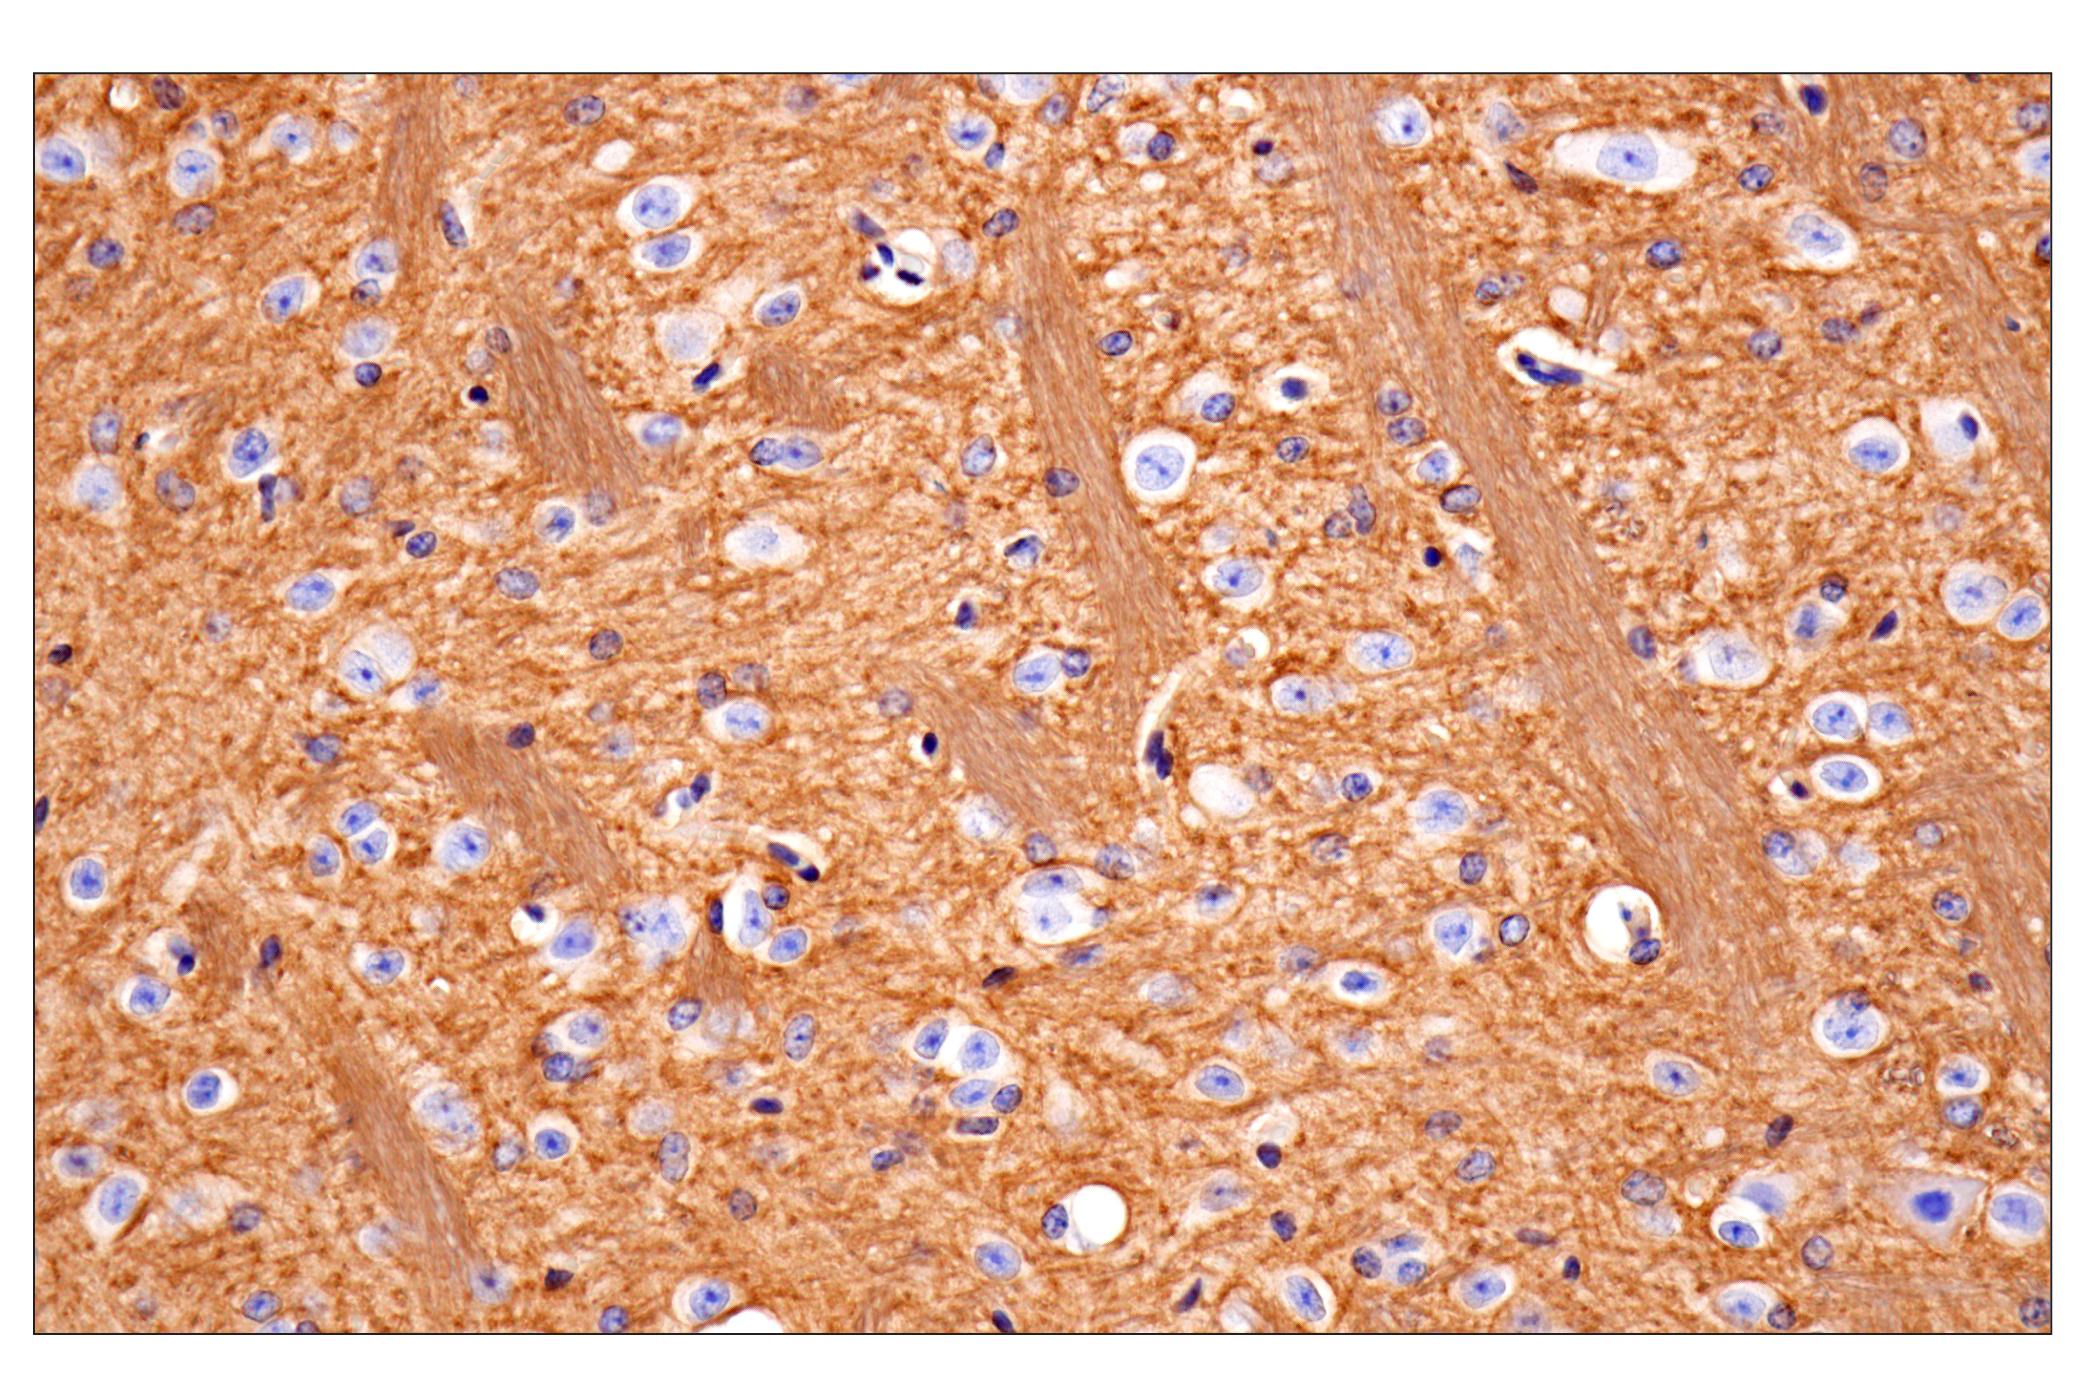  Image 28: Mouse Reactive Exosome Marker Antibody Sampler Kit